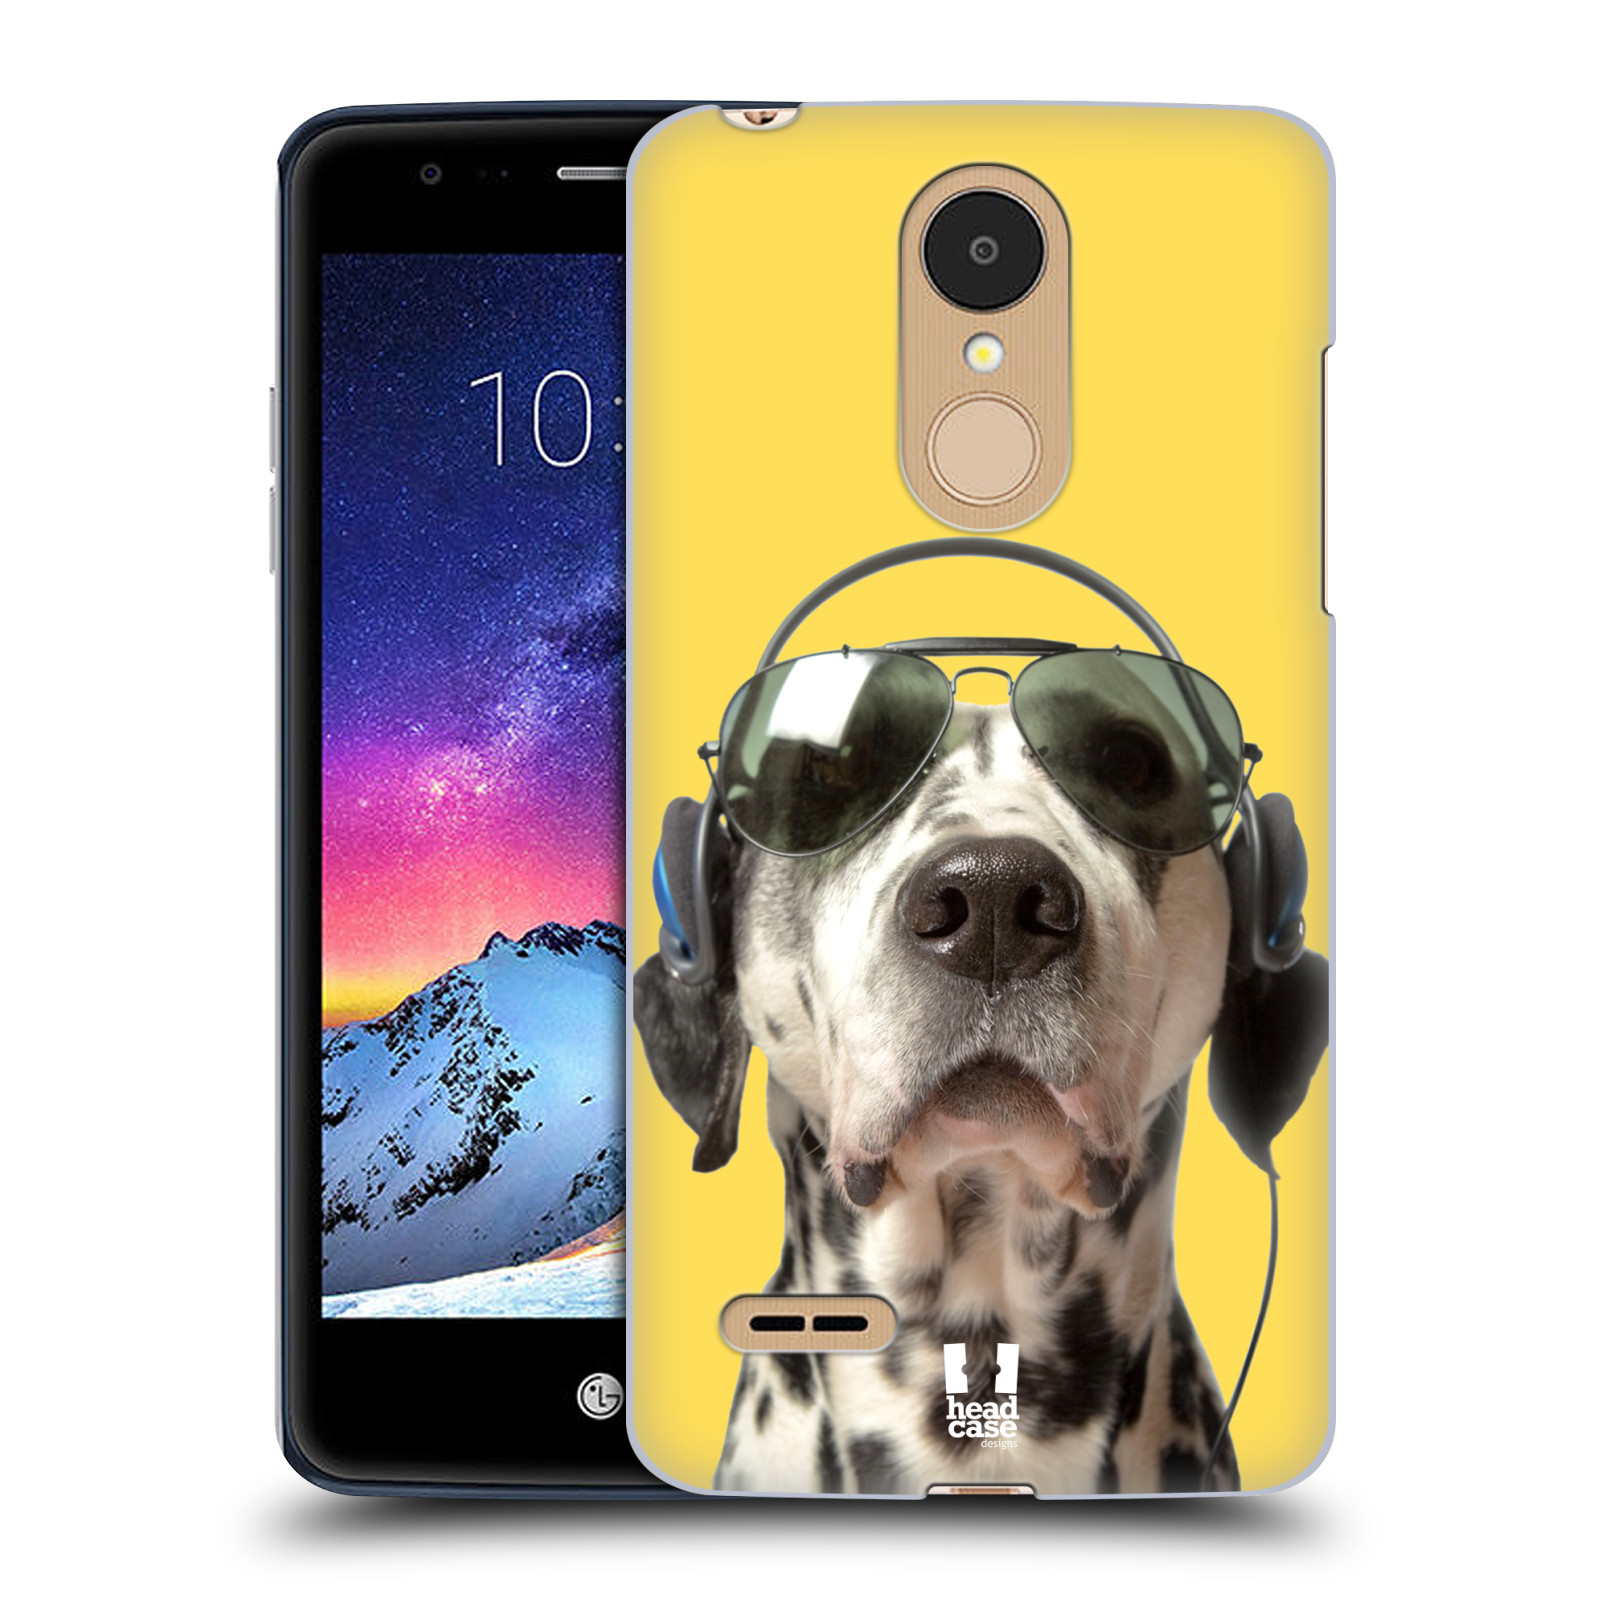 HEAD CASE plastový obal na mobil LG K9 / K8 2018 vzor Legrační zvířátka dalmatin se sluchátky žlutá